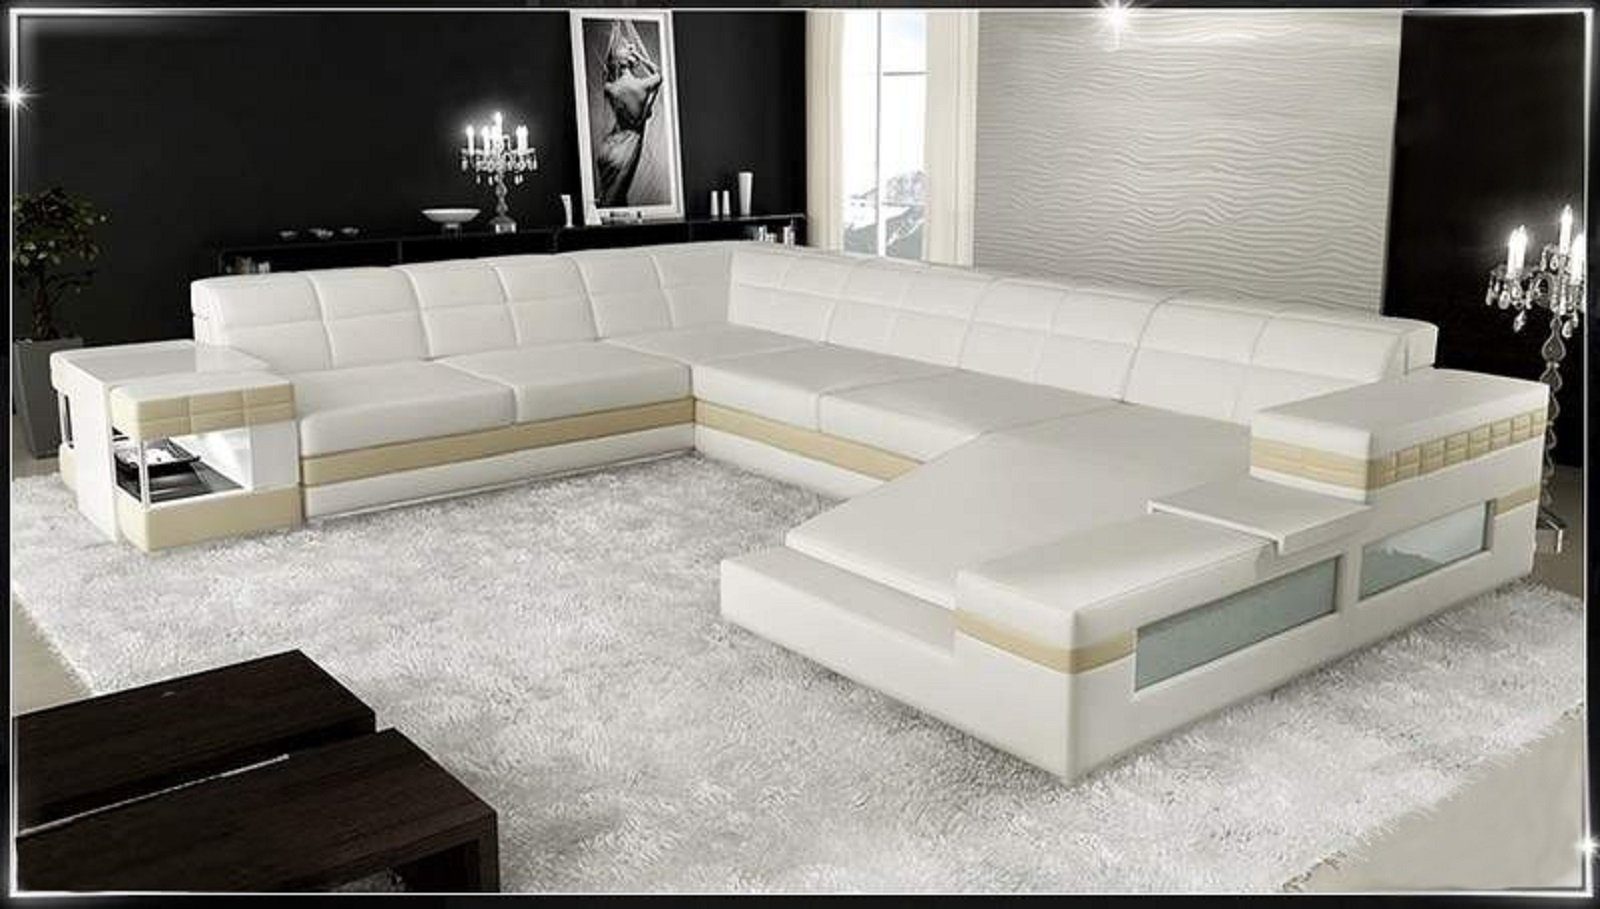 JVmoebel Ecksofa Design Ecksofa Sofa Couch Polster Eckgarnitur Ledersofa Sofa, Made in Europe Weiß/Beige